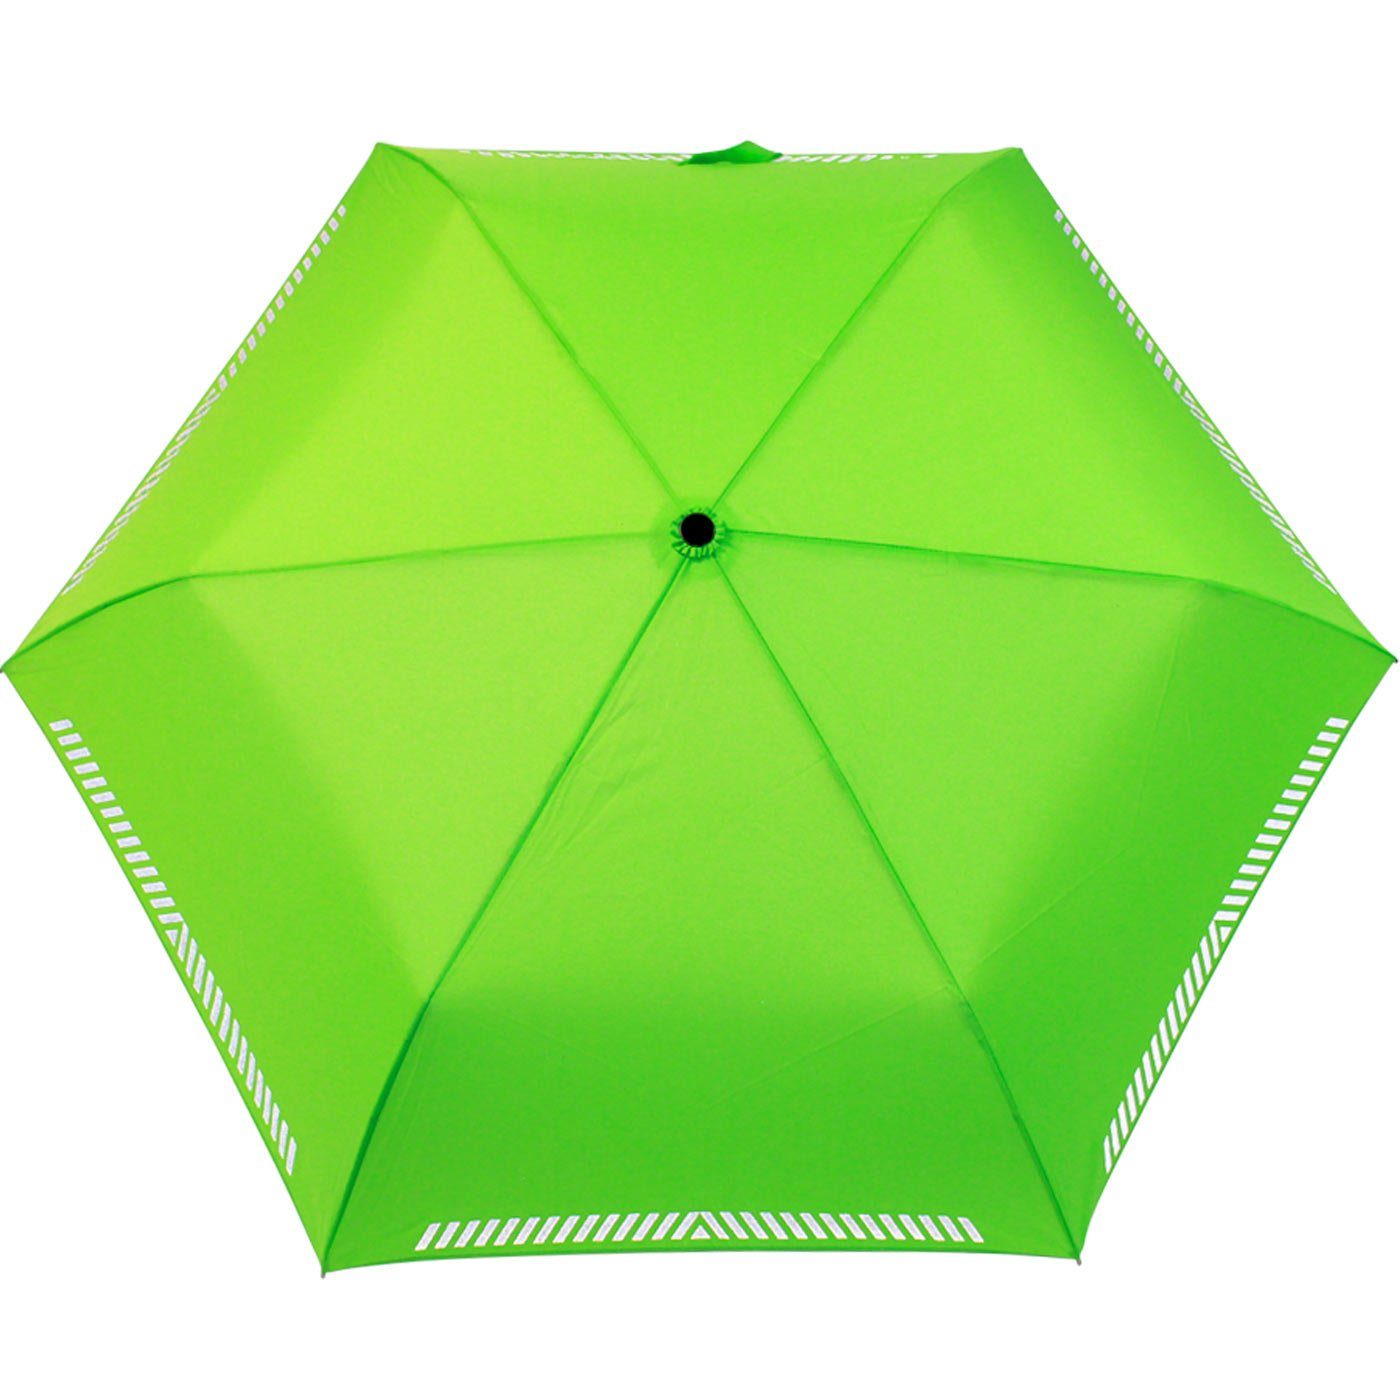 Reflex neon-grün Safety Kinderschirm leicht, Taschenregenschirm extra Mini iX-brella reflektierend